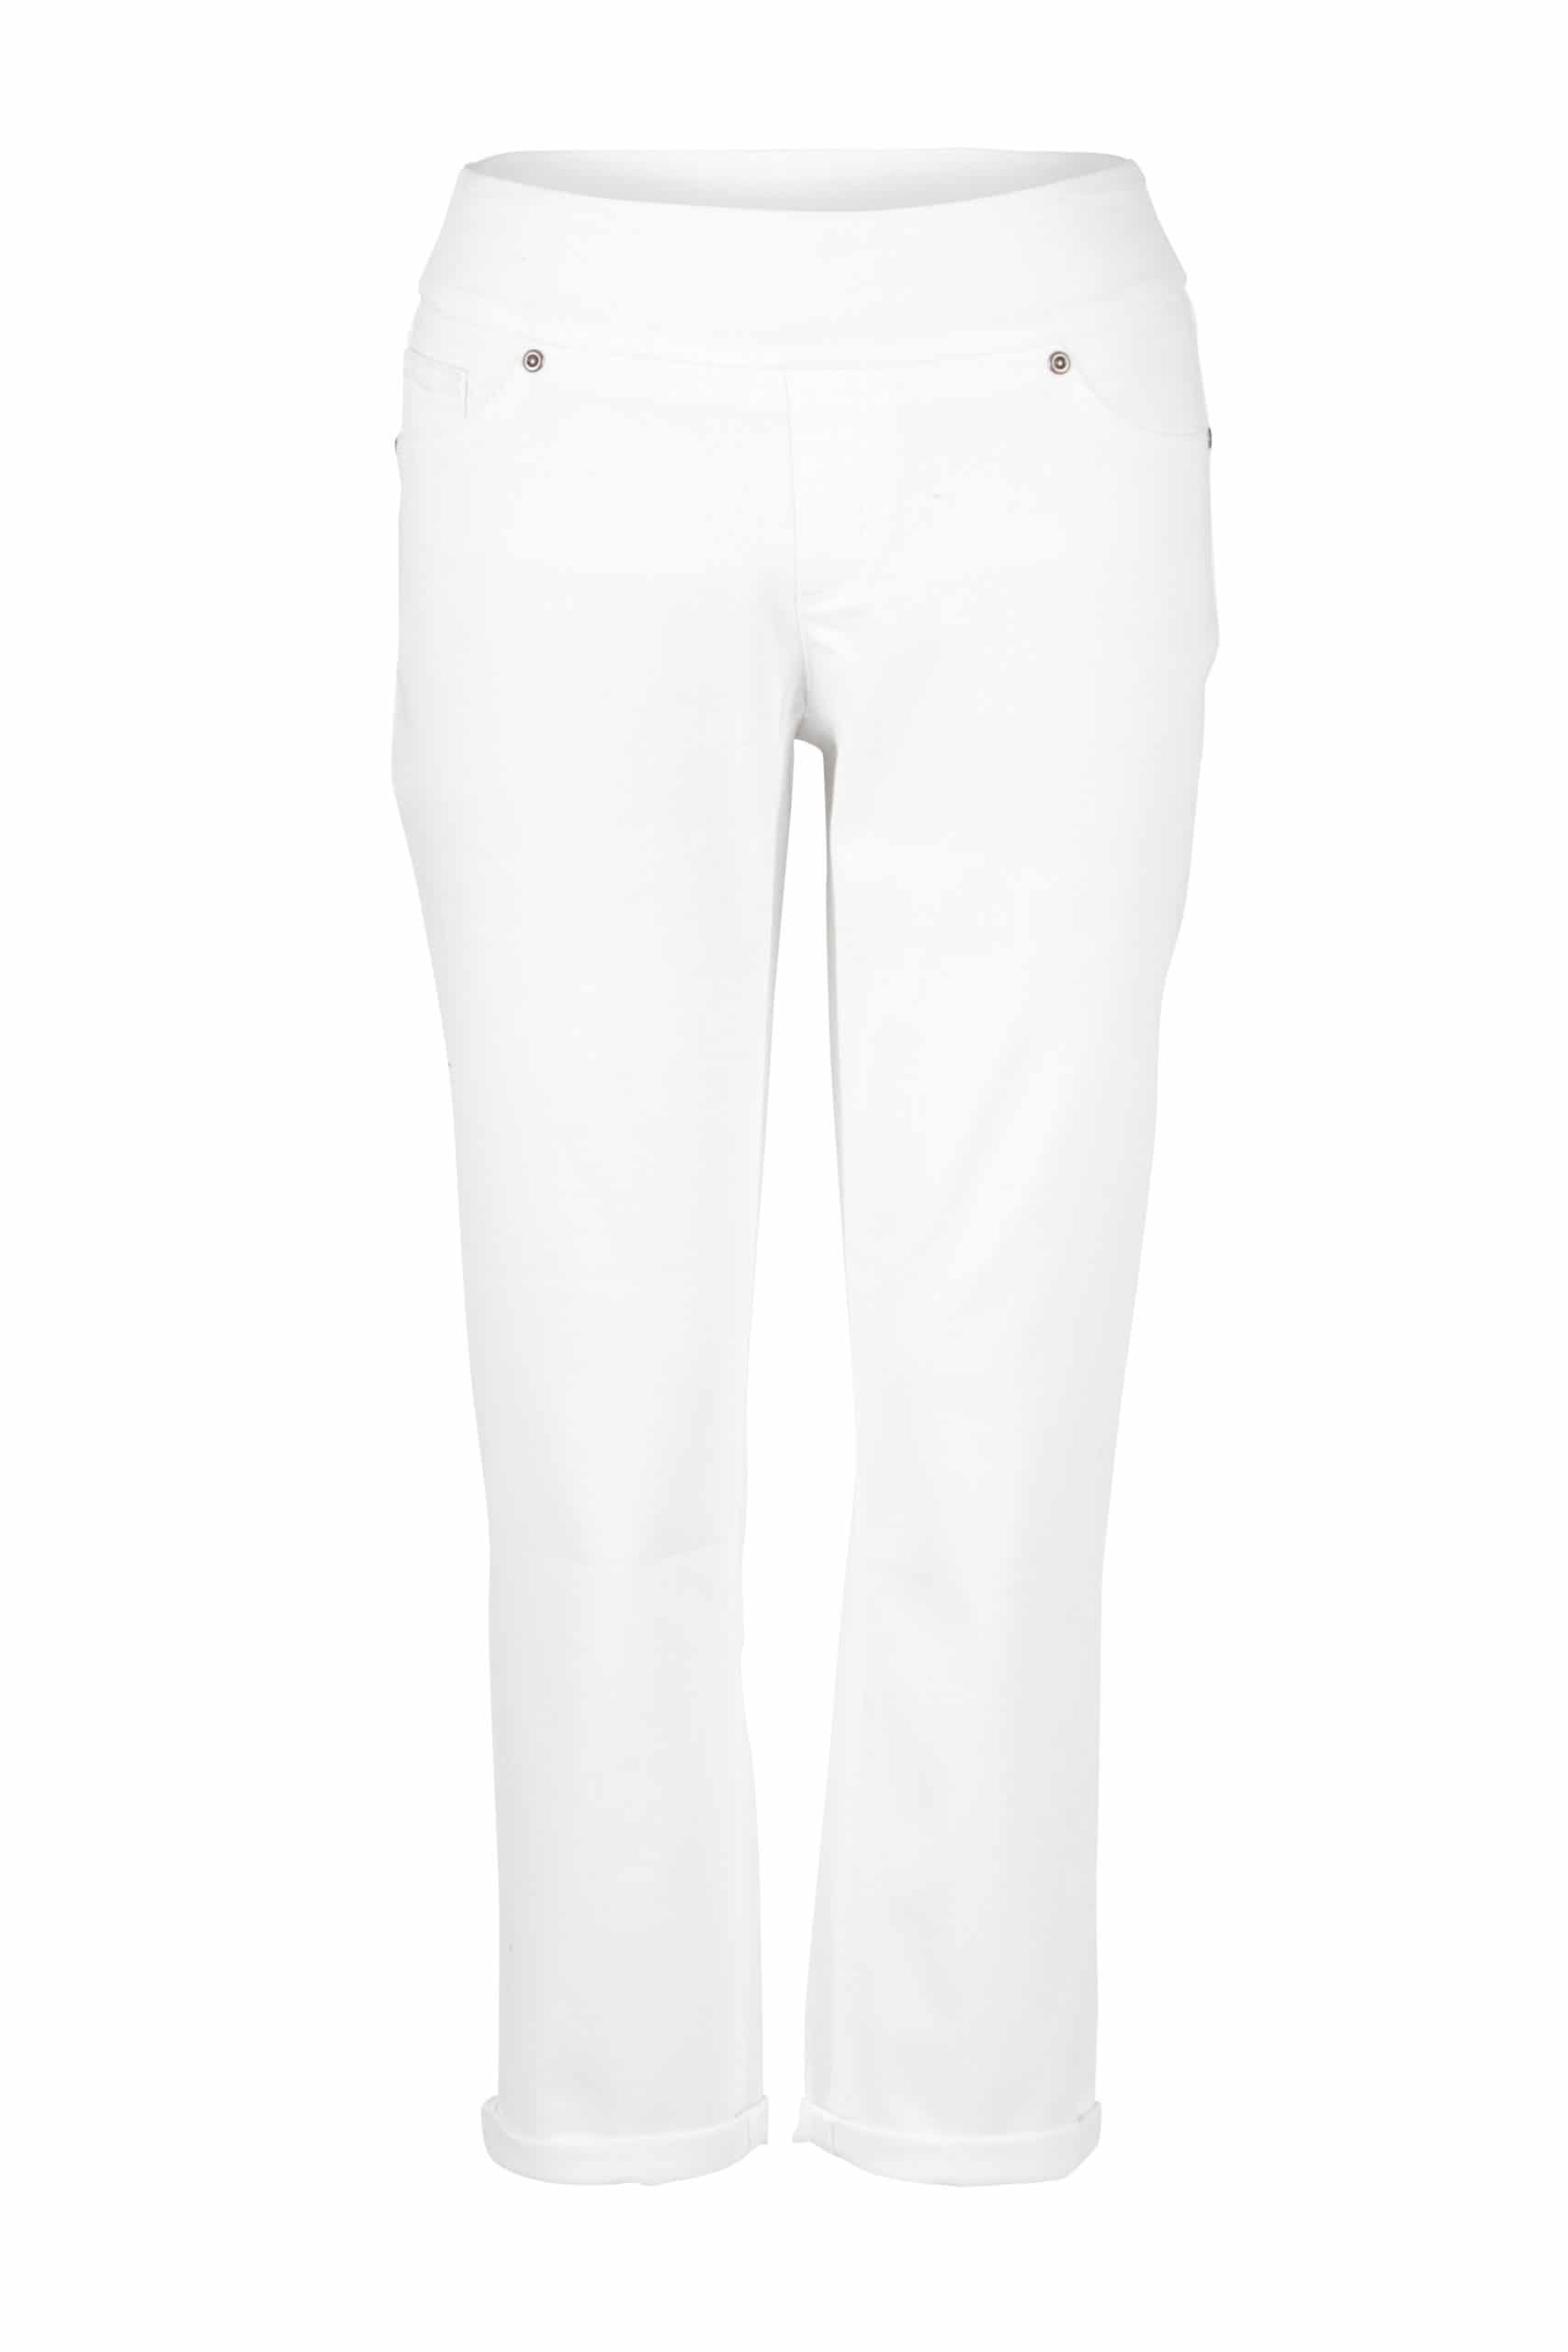 Womens White Jean Falls Creek Capris Crop Pants W/ 5 Pocket Design Size 18